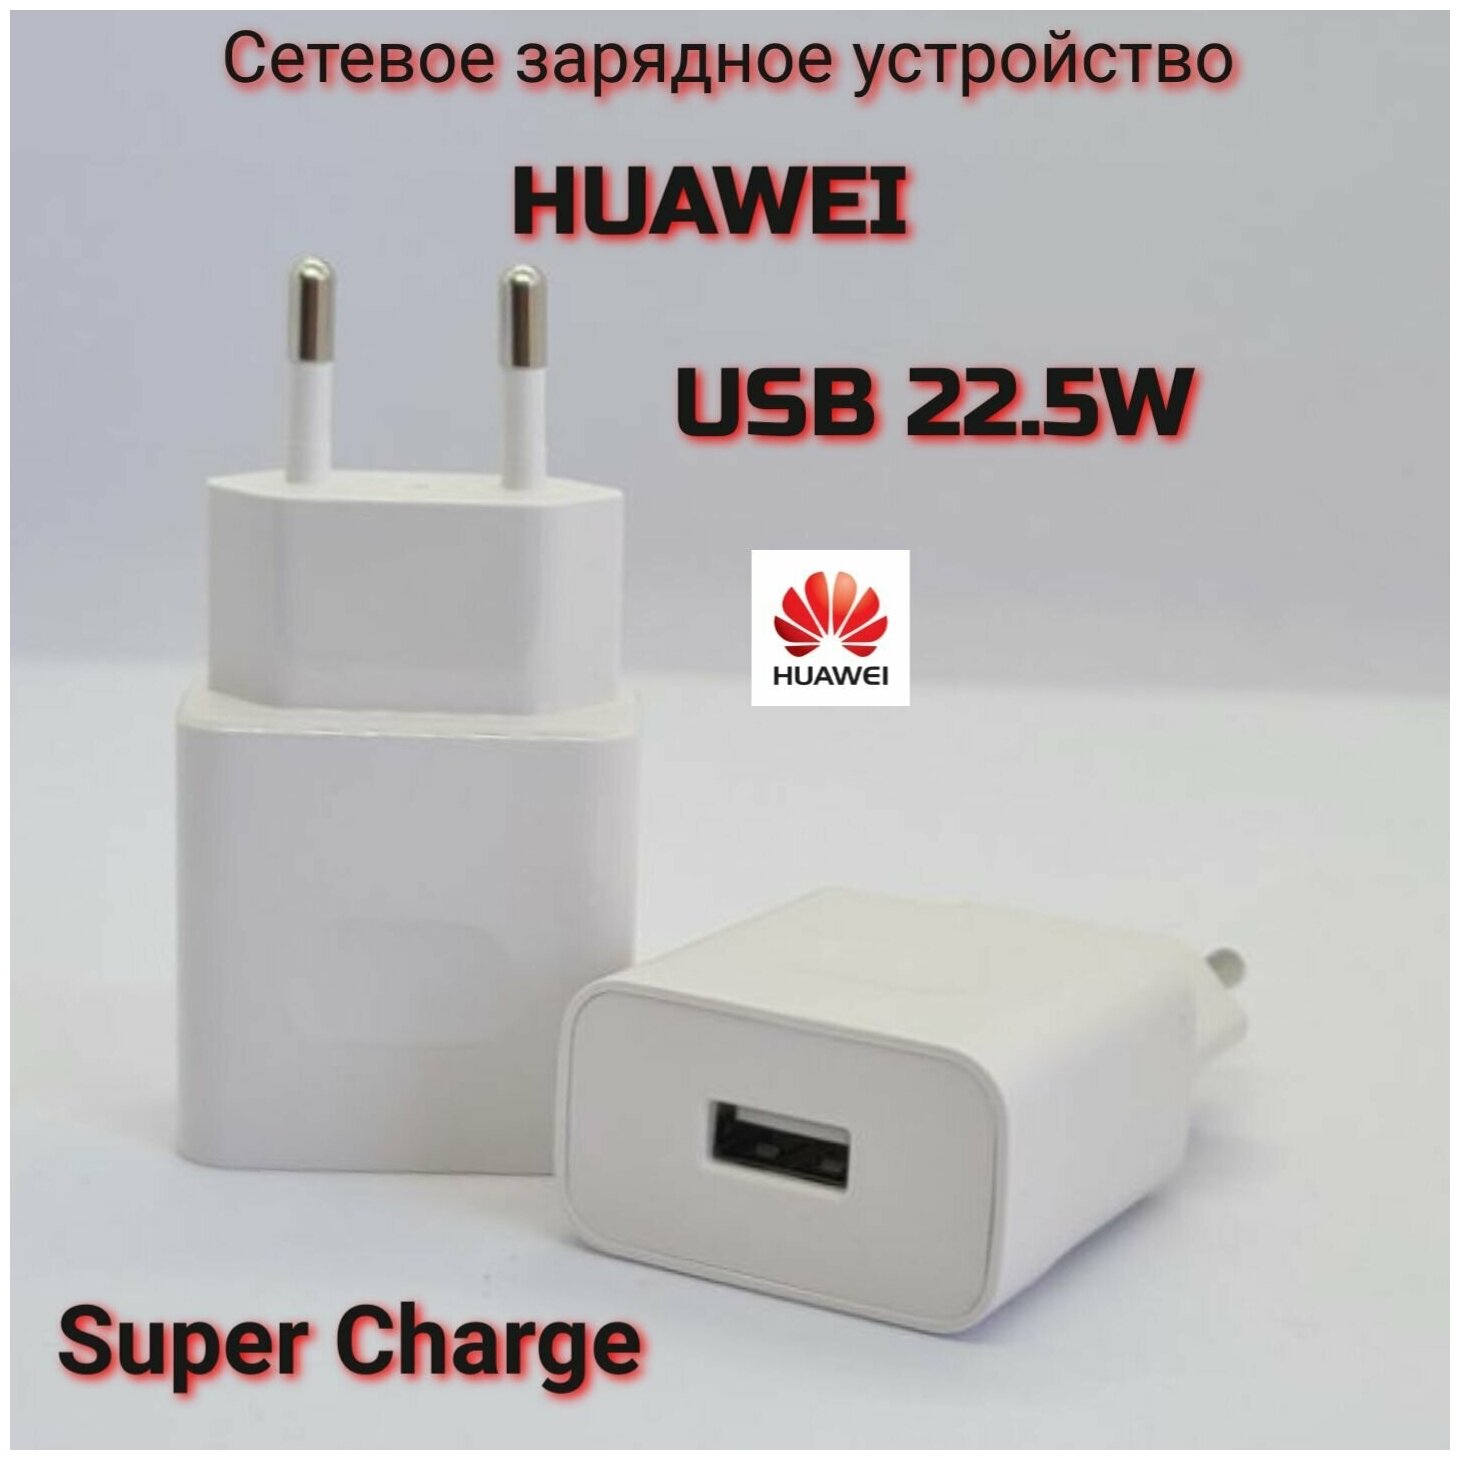 Оригинальное сетевое зарядное устройство Huawei Max 22.5W/ Super Charge / HW-100225E00 / цвет White/ Быстрая зарядка с USB входом